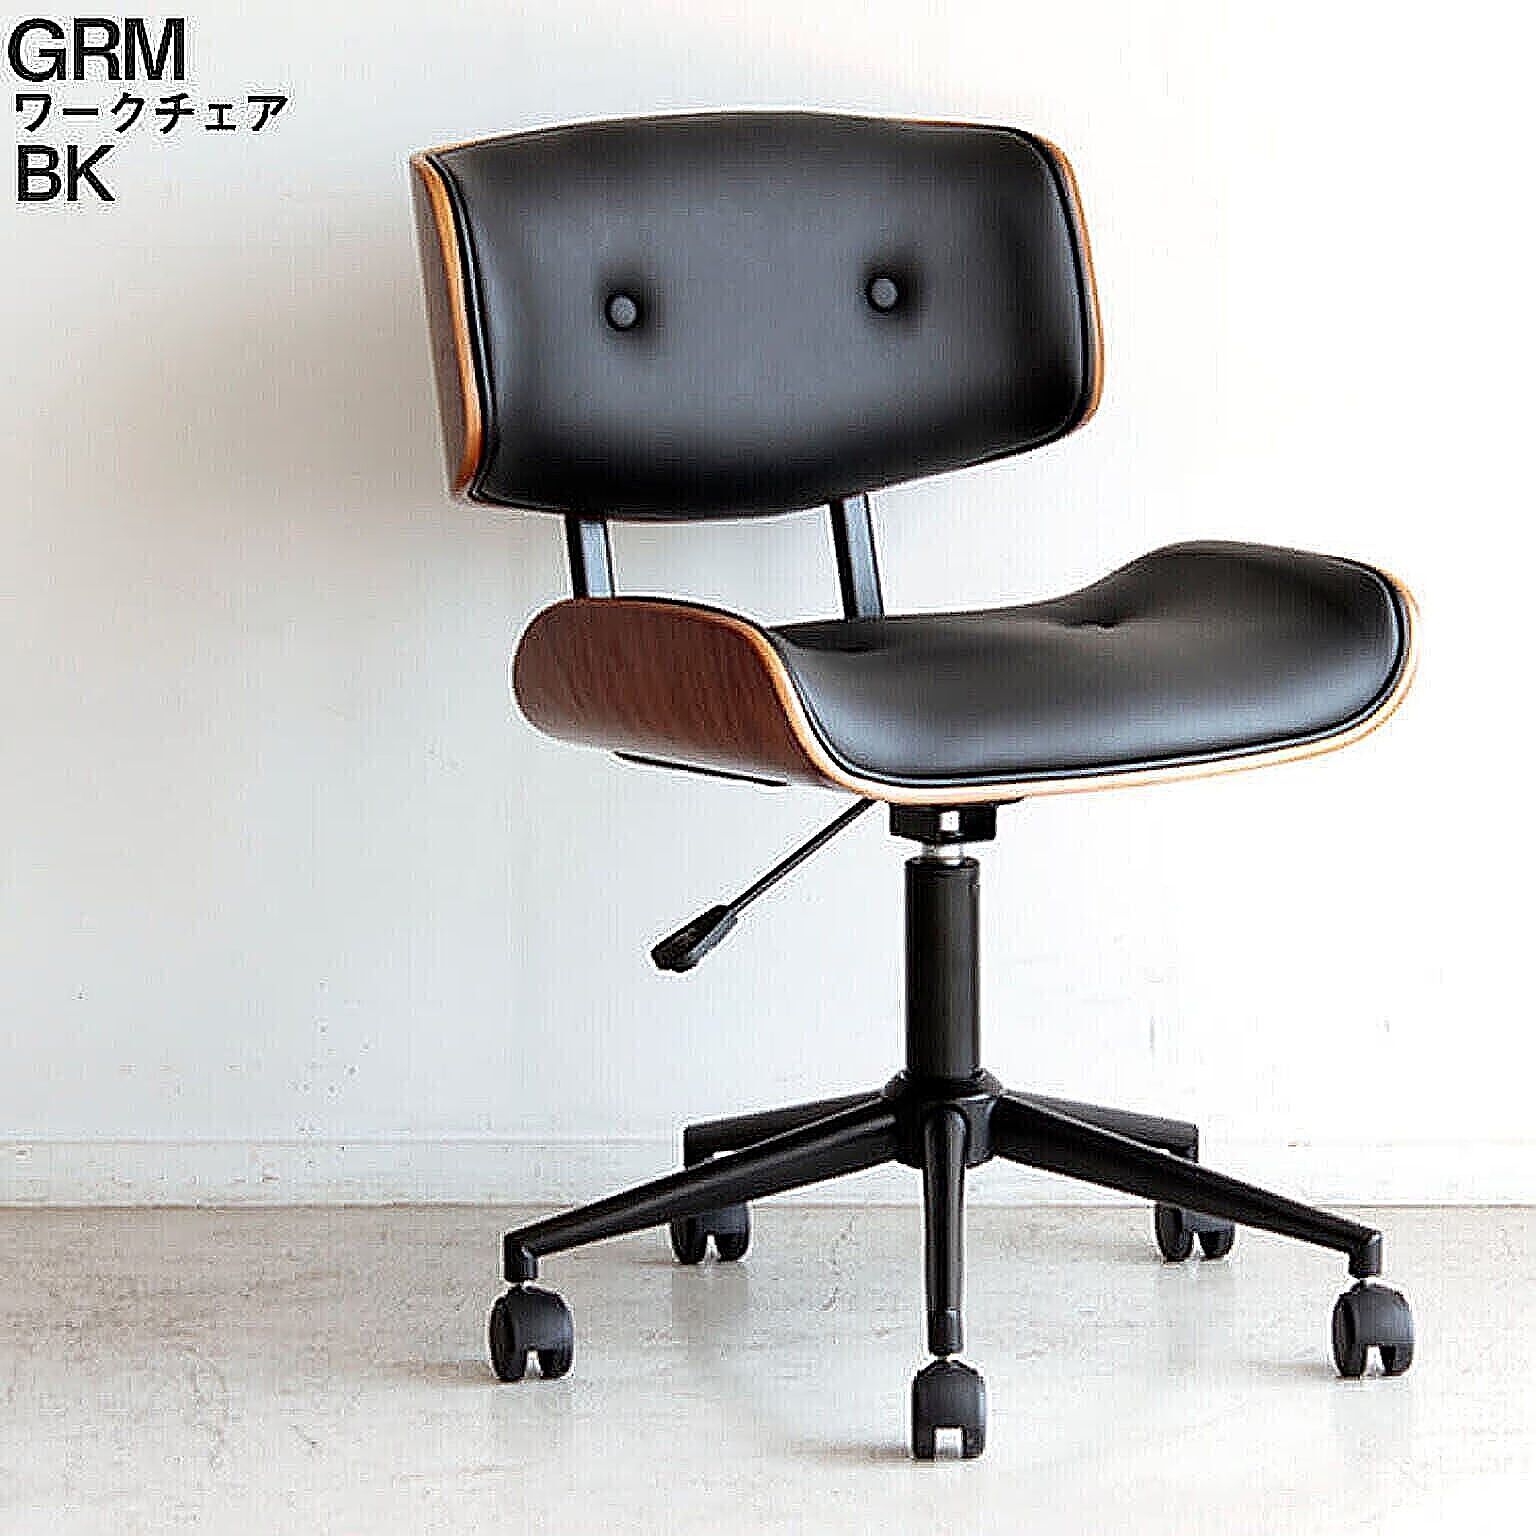 ワークチェア グラム GRM グラム ブラック BK 椅子 ルームチェア オフィスチェア デスクチェア シンプル モダン 昇降式 回転式 組立 リモートワーク 東馬 